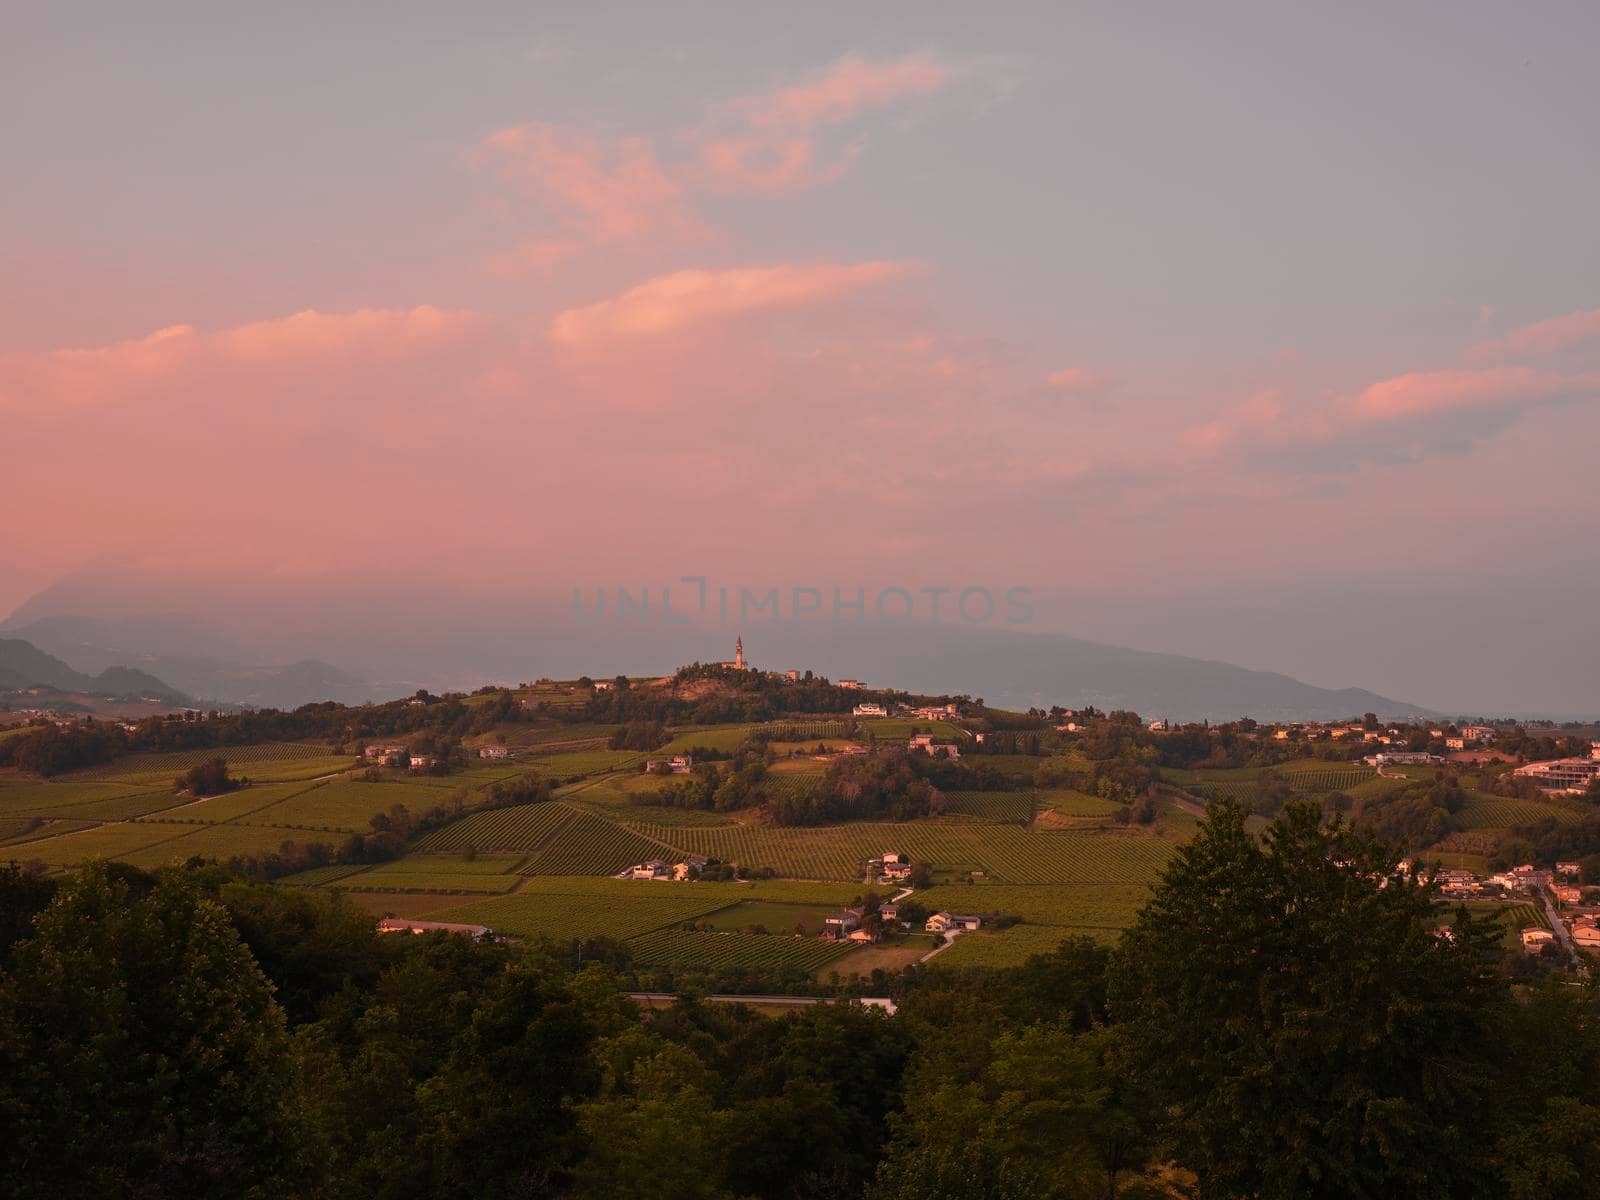 View of the Prosecco wine hill - Conegliano Valdobbiadene, Prosecco road by drmglc